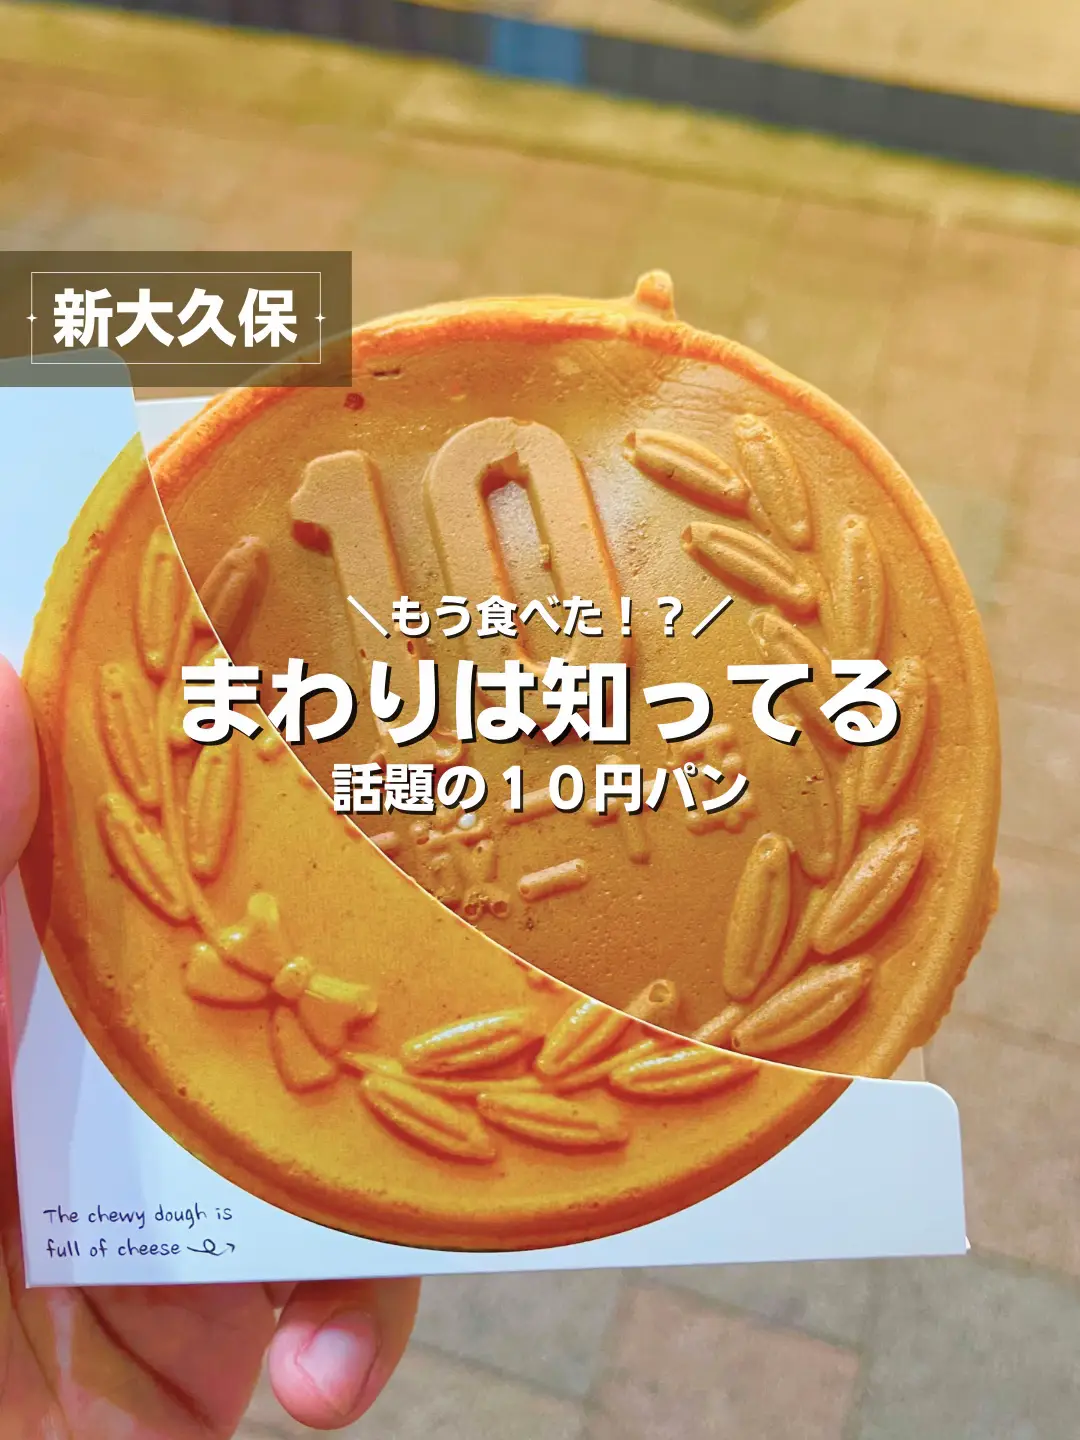 10円パン 新大久保 - Lemon8検索